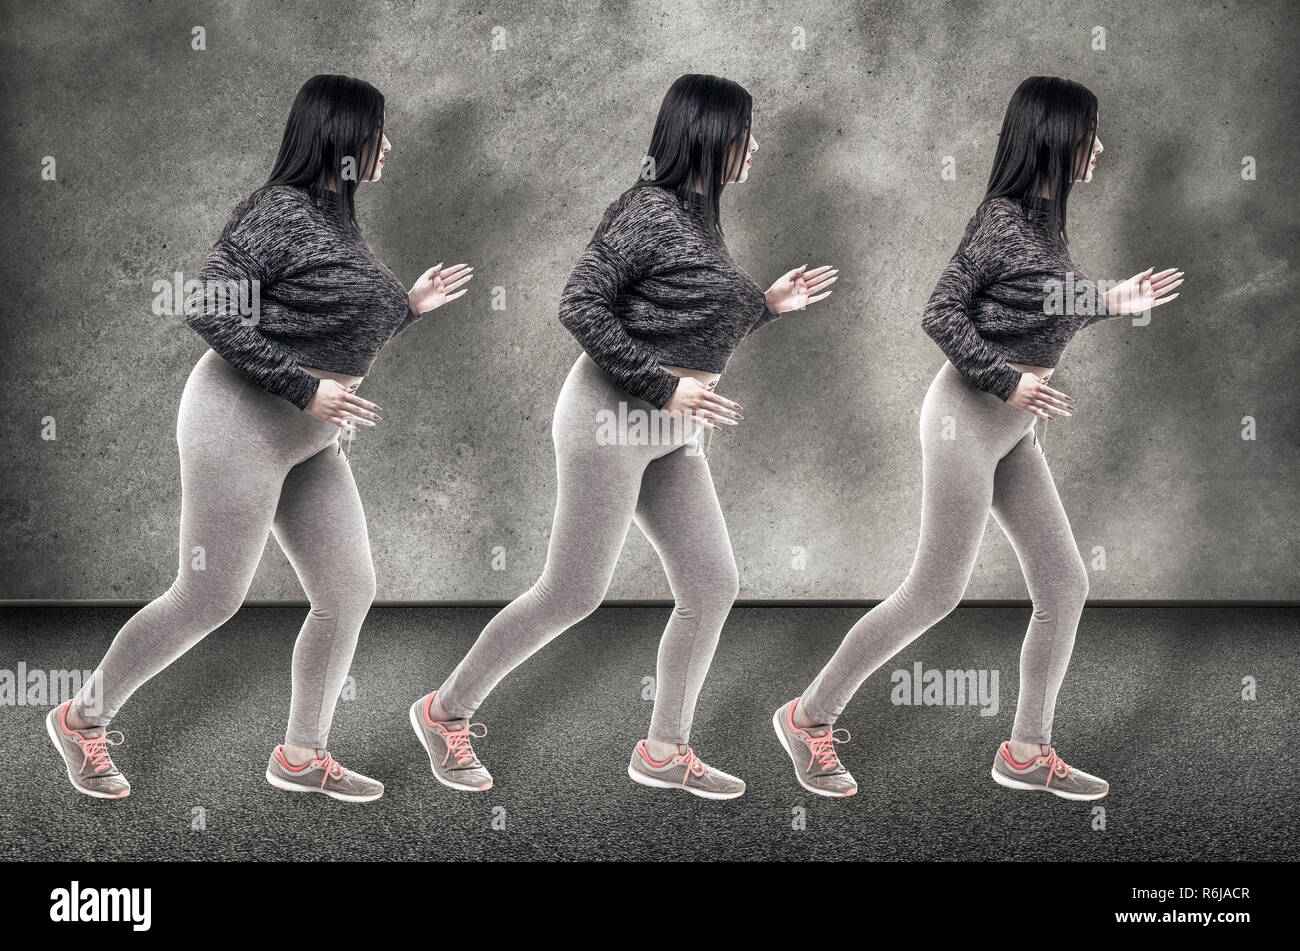 La transformación. Joven Mujer grasa girando a su cuerpo delgado. Dieta saludable nutrición adecuada elección concepto Foto de stock